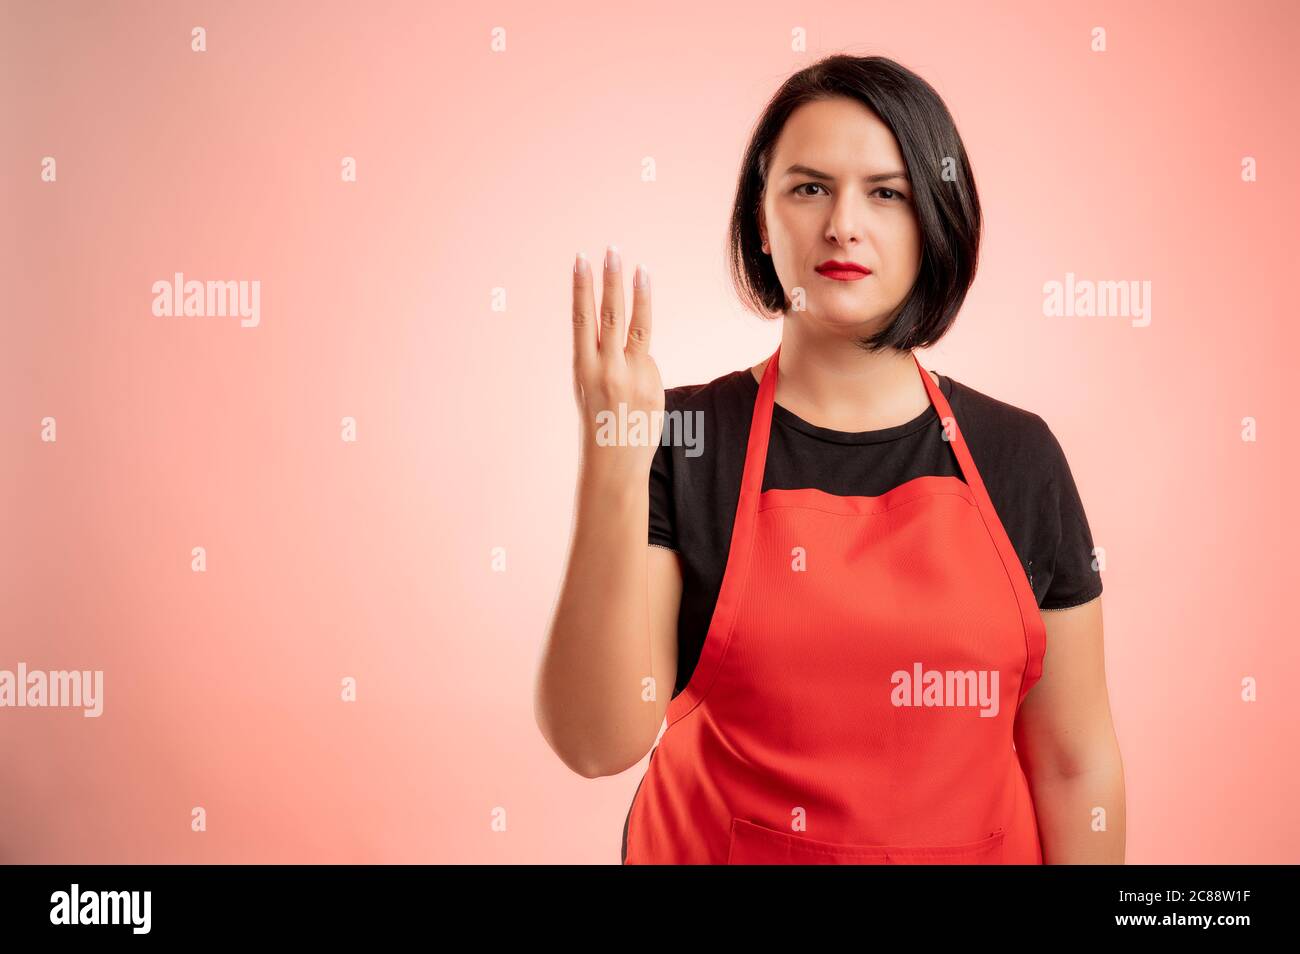 Frau beschäftigt im Supermarkt mit roter Schürze und schwarzem T-Shirt, zählen drei mit ihren Fingern isoliert auf rotem Hintergrund Stockfoto